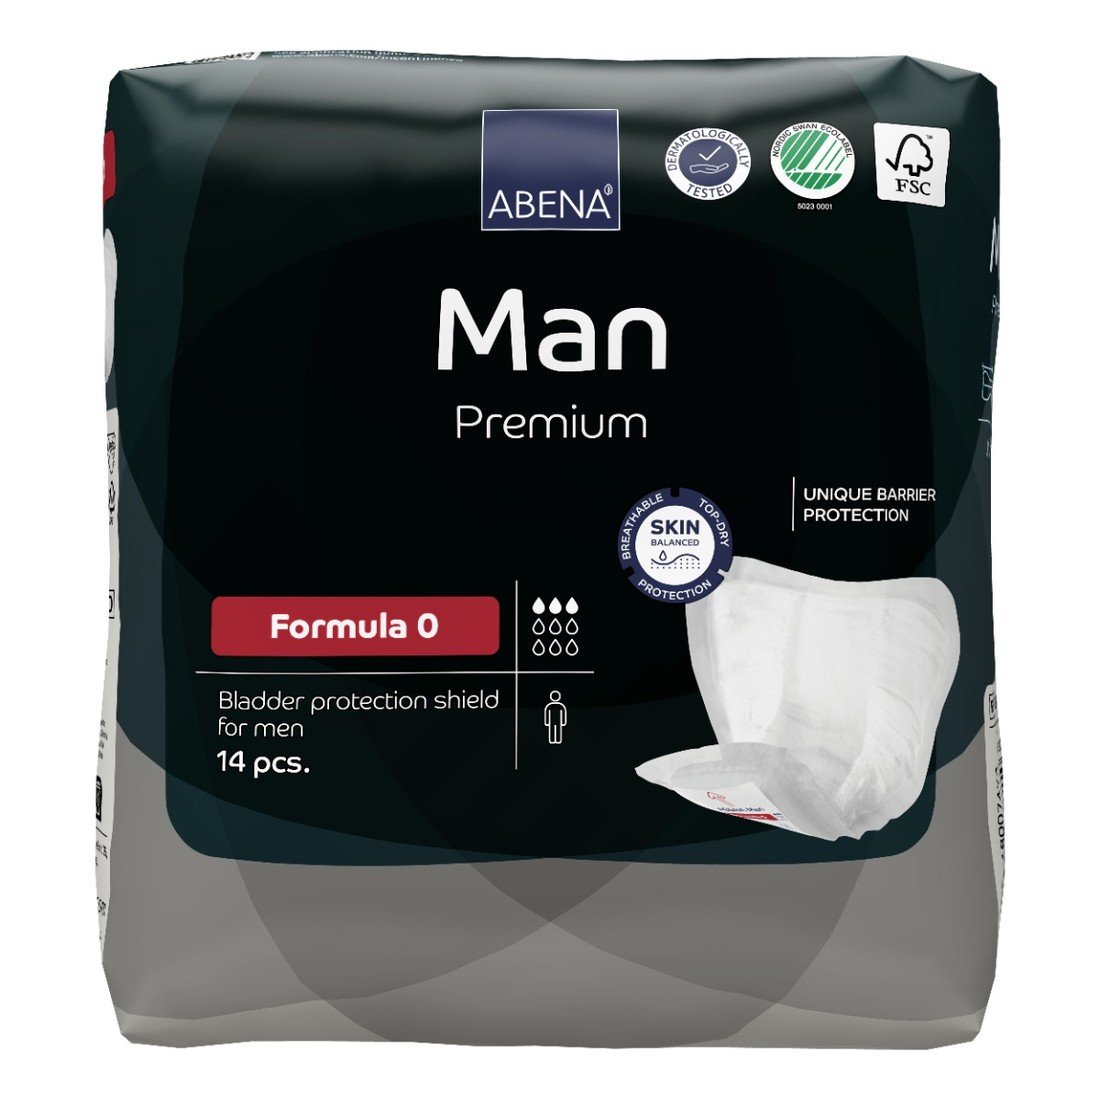 Abena Man Premium Formula 0 vložky absorpční, pro muže, 300ml, 14ks